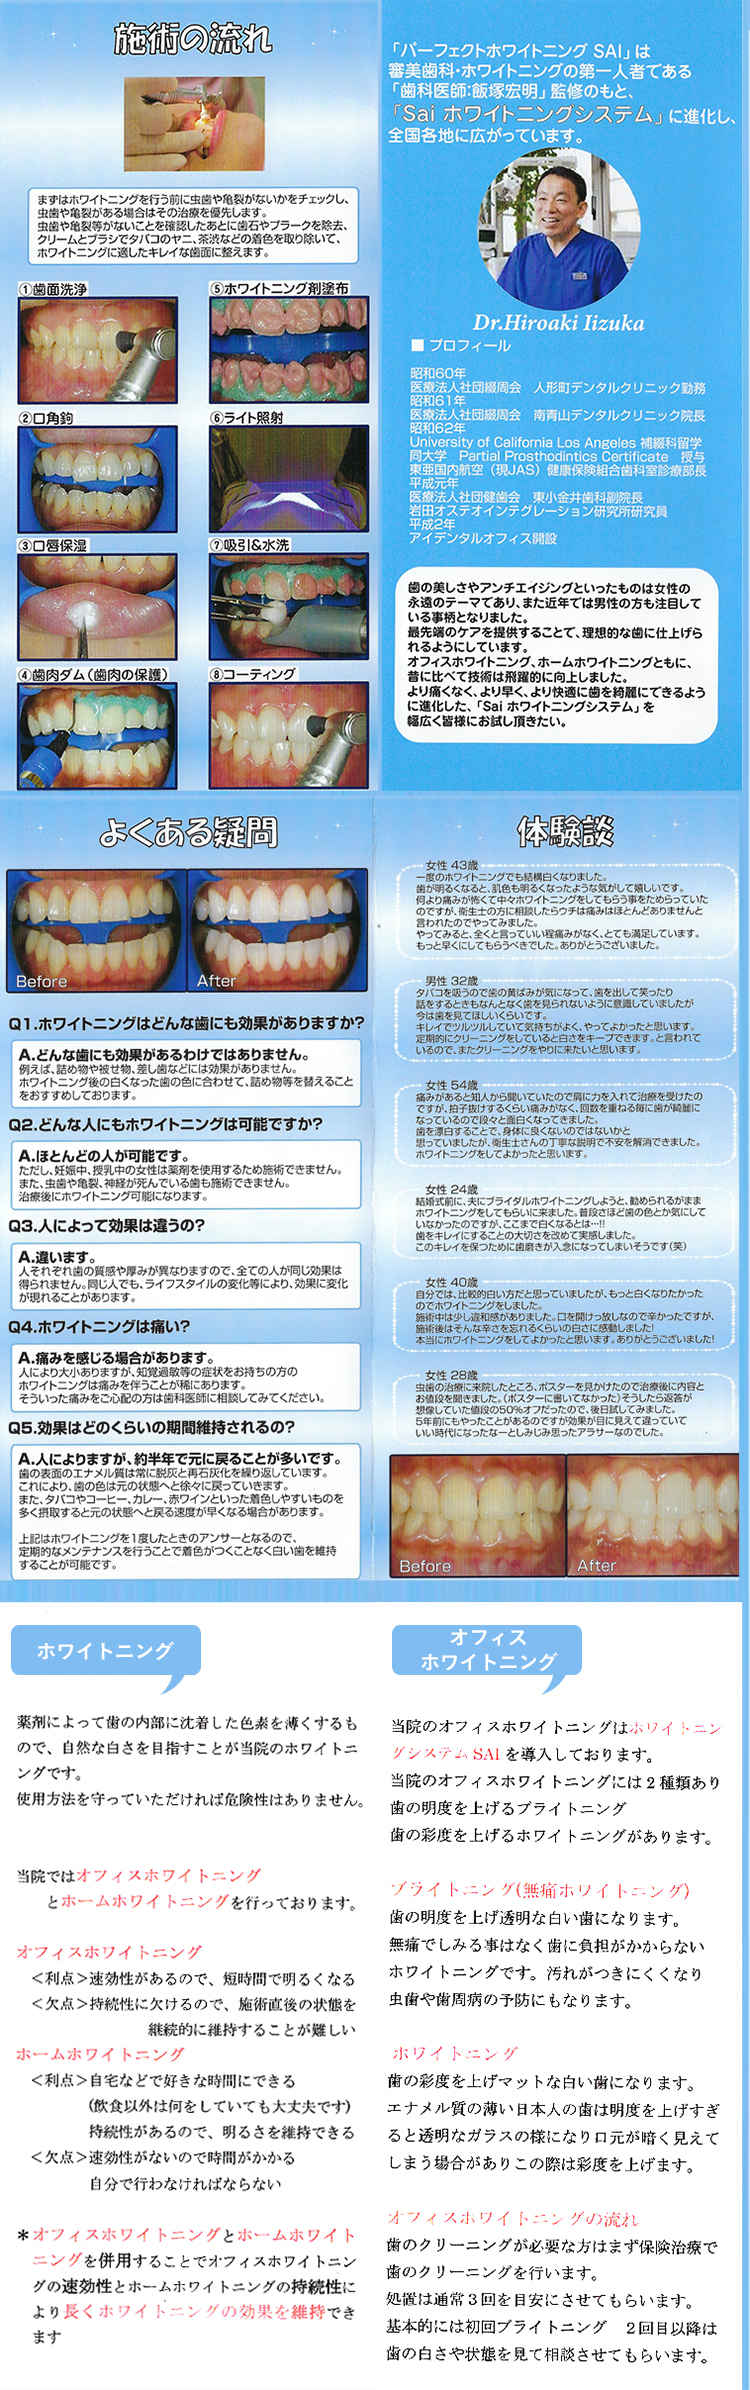 石川歯科クリニックのお知らせ内容